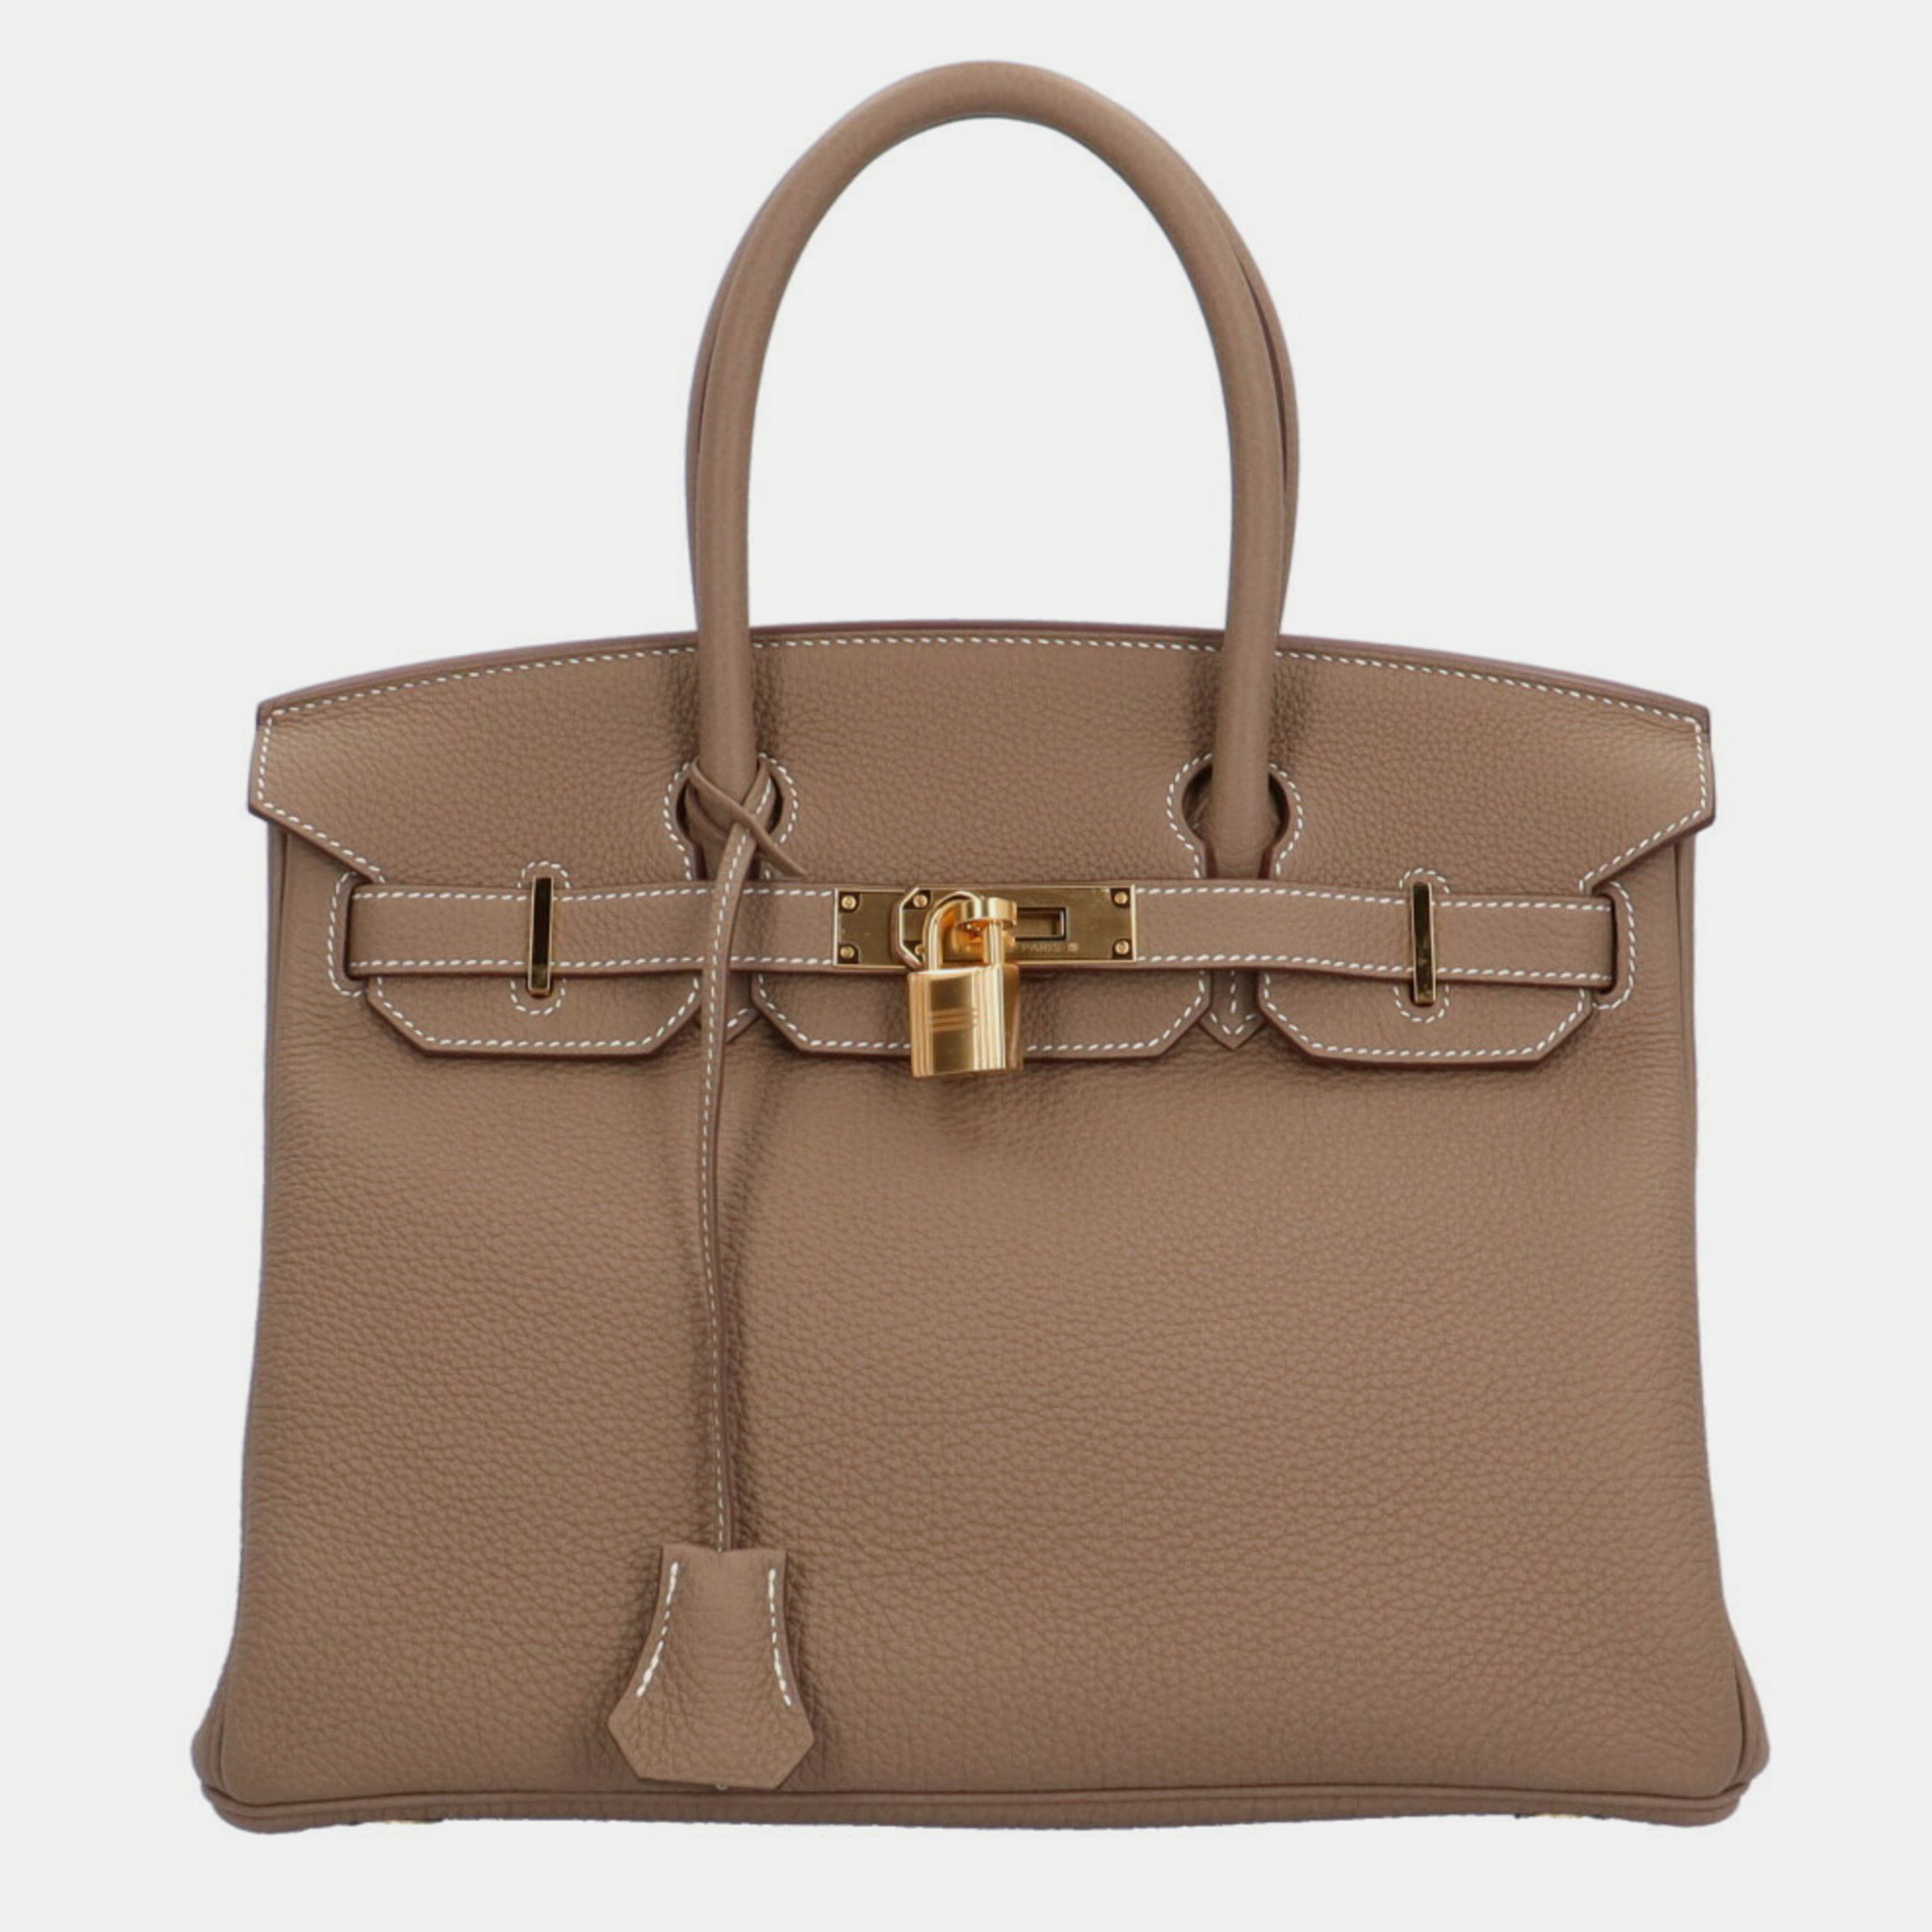 Hermes birkin 30 handbag togo brown women's